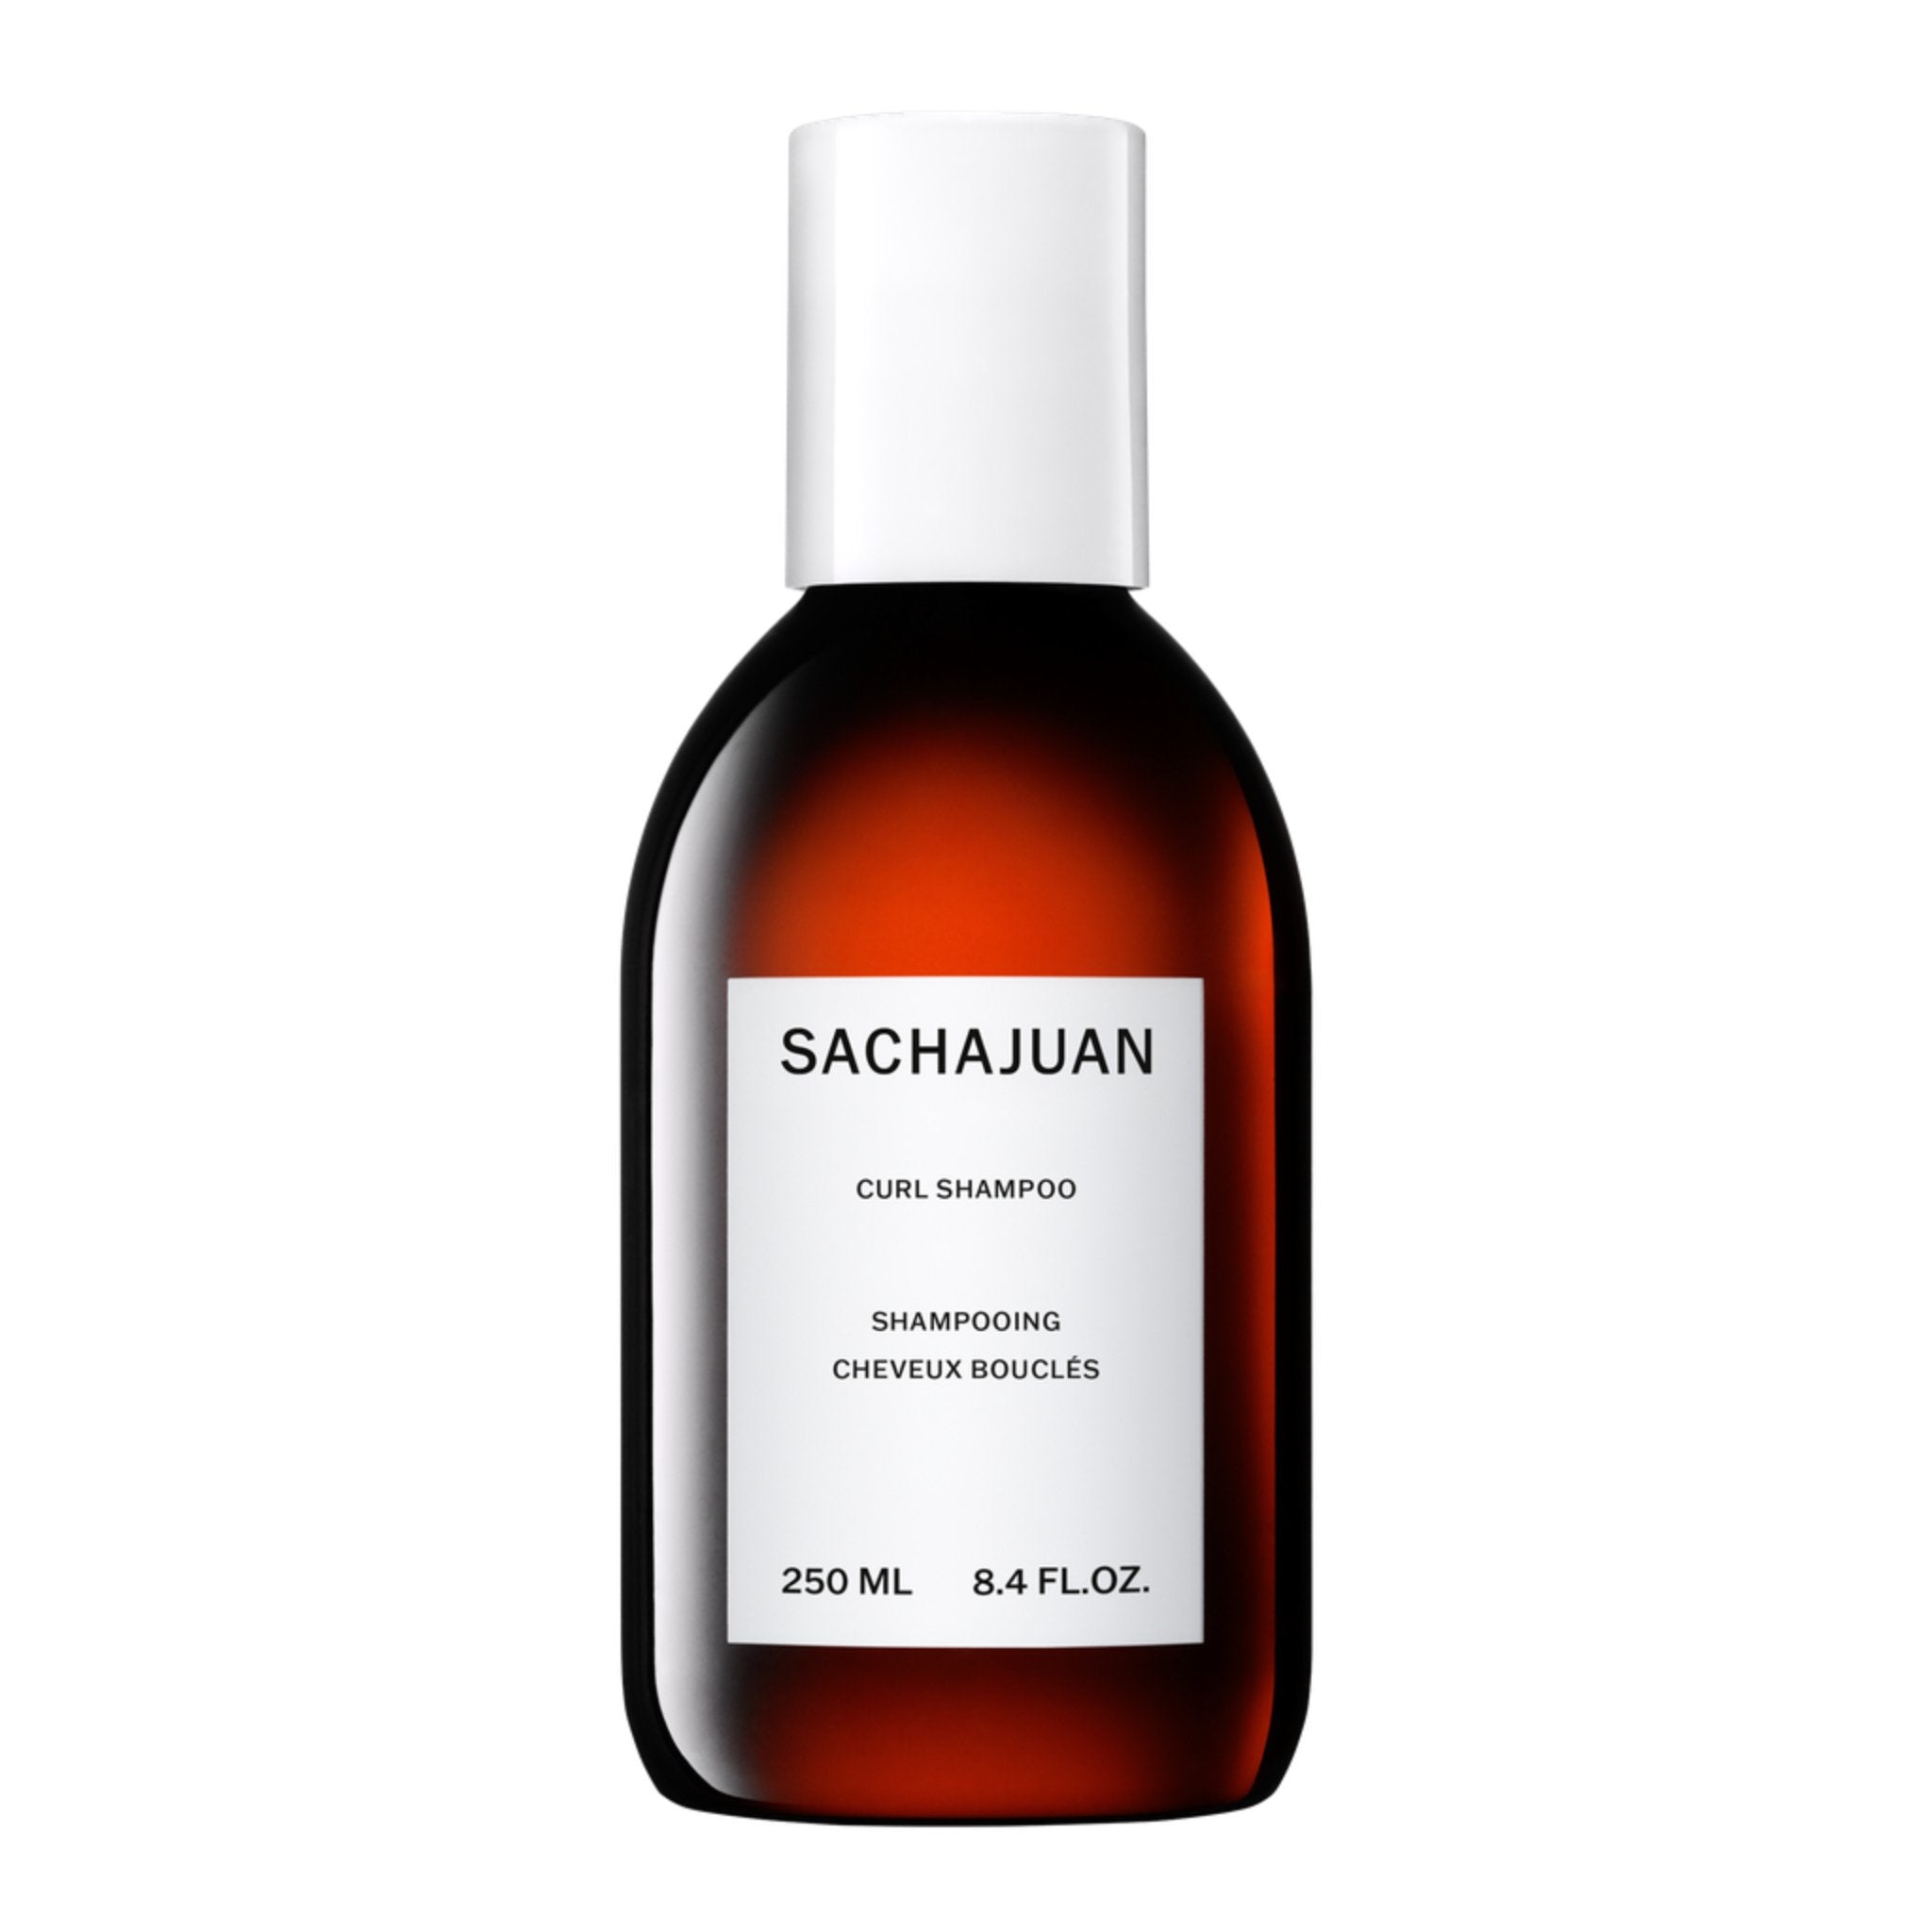 Sachajuan. Shampoing Cheveux Bouclés - 250 ml - Concept C. Shop